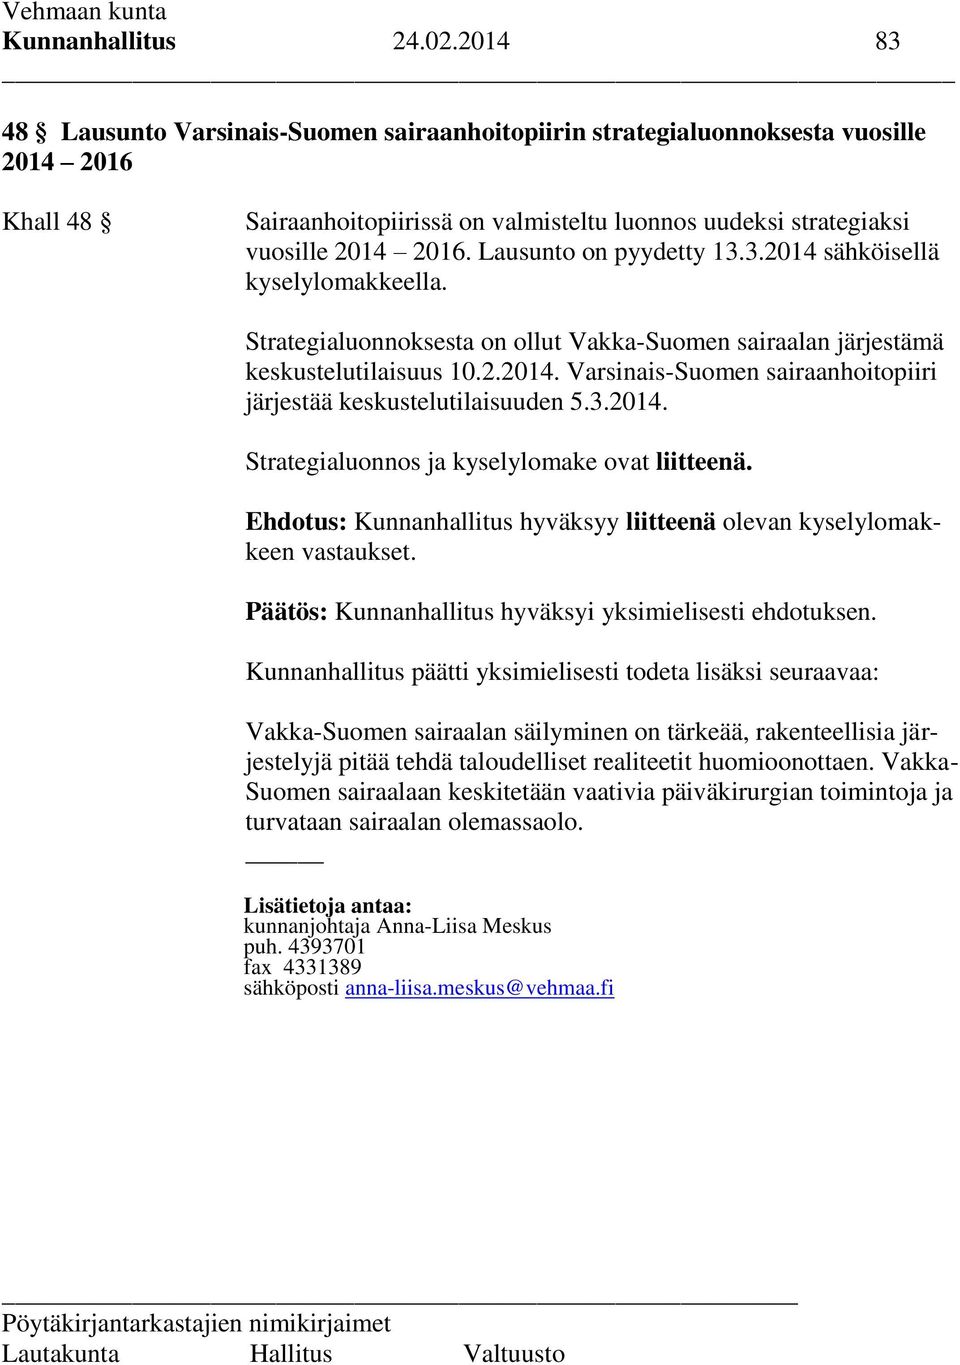 Lausunto on pyydetty 13.3.2014 sähköisellä kyselylomakkeella. Strategialuonnoksesta on ollut Vakka-Suomen sairaalan järjestämä keskustelutilaisuus 10.2.2014. Varsinais-Suomen sairaanhoitopiiri järjestää keskustelutilaisuuden 5.